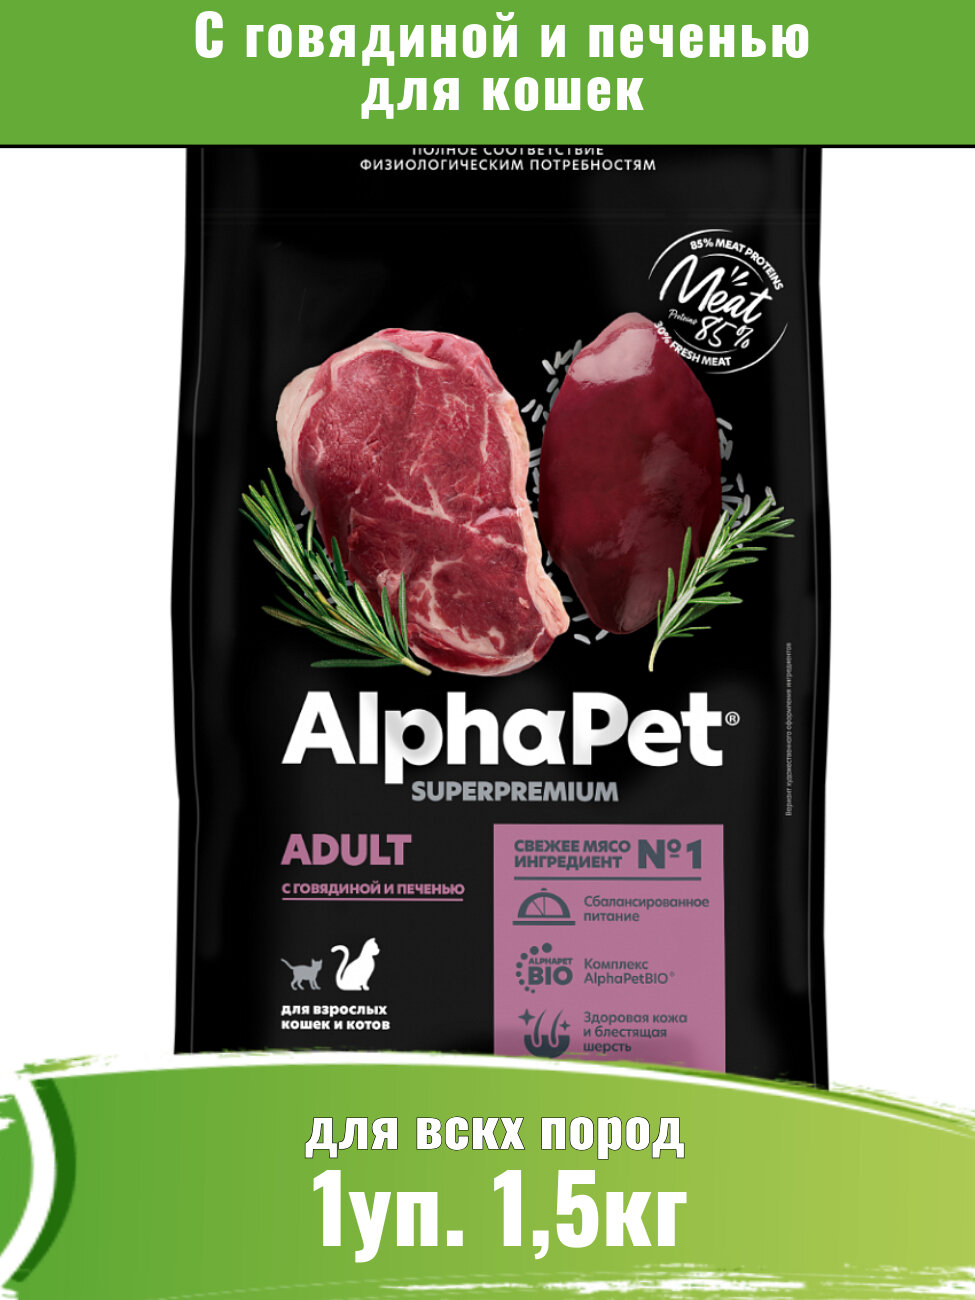 AlphaPet Superpremium (АльфаПет) корм для кошек с говядиной и печенью 1,5кг